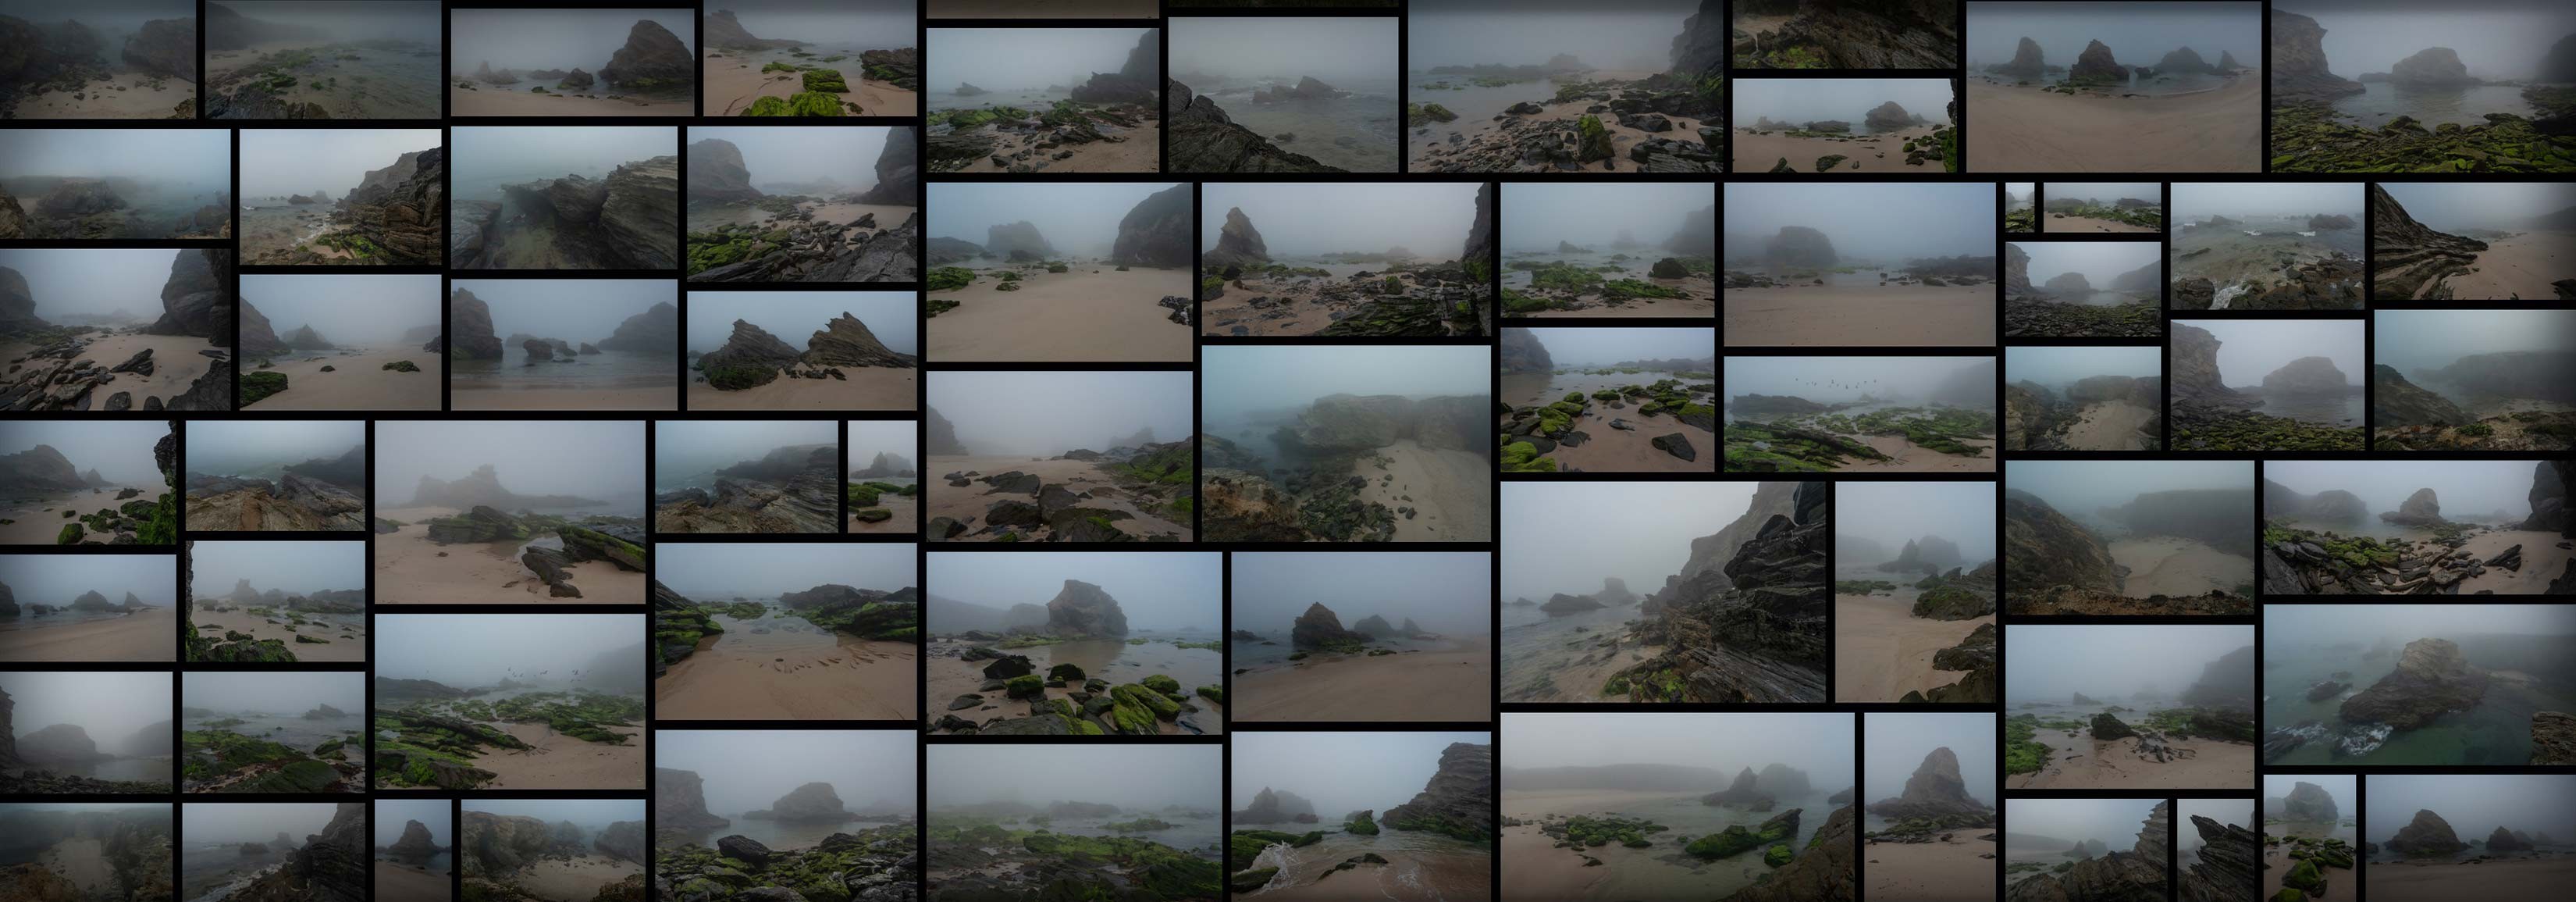 128 张大雾海滩参考照片 Foggy Beach